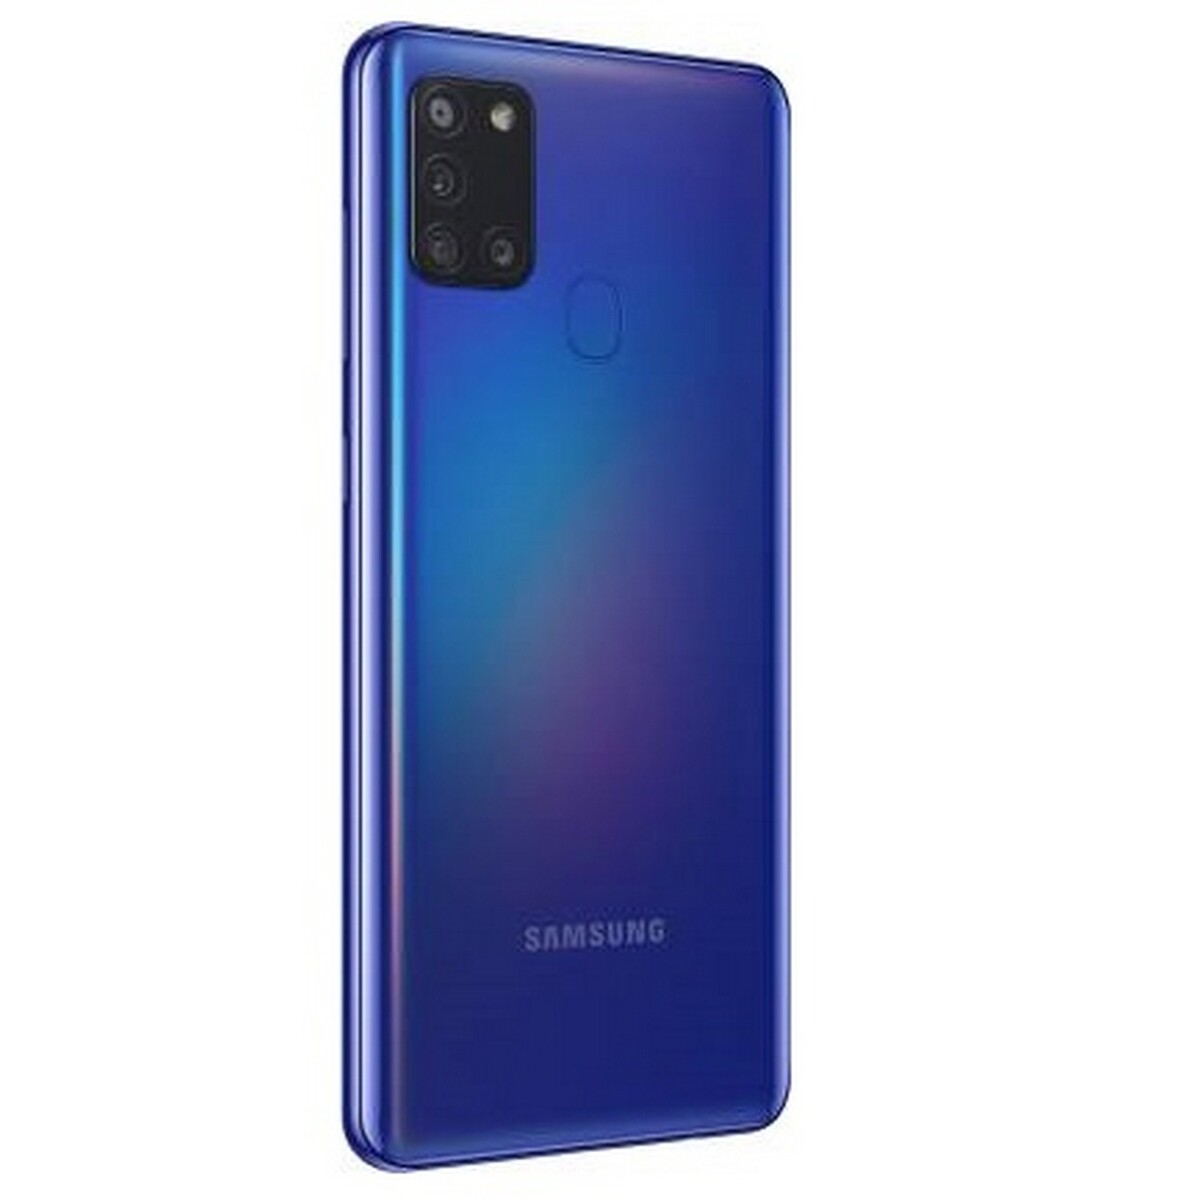 Samsung A21s 6GB /64GB  Blue